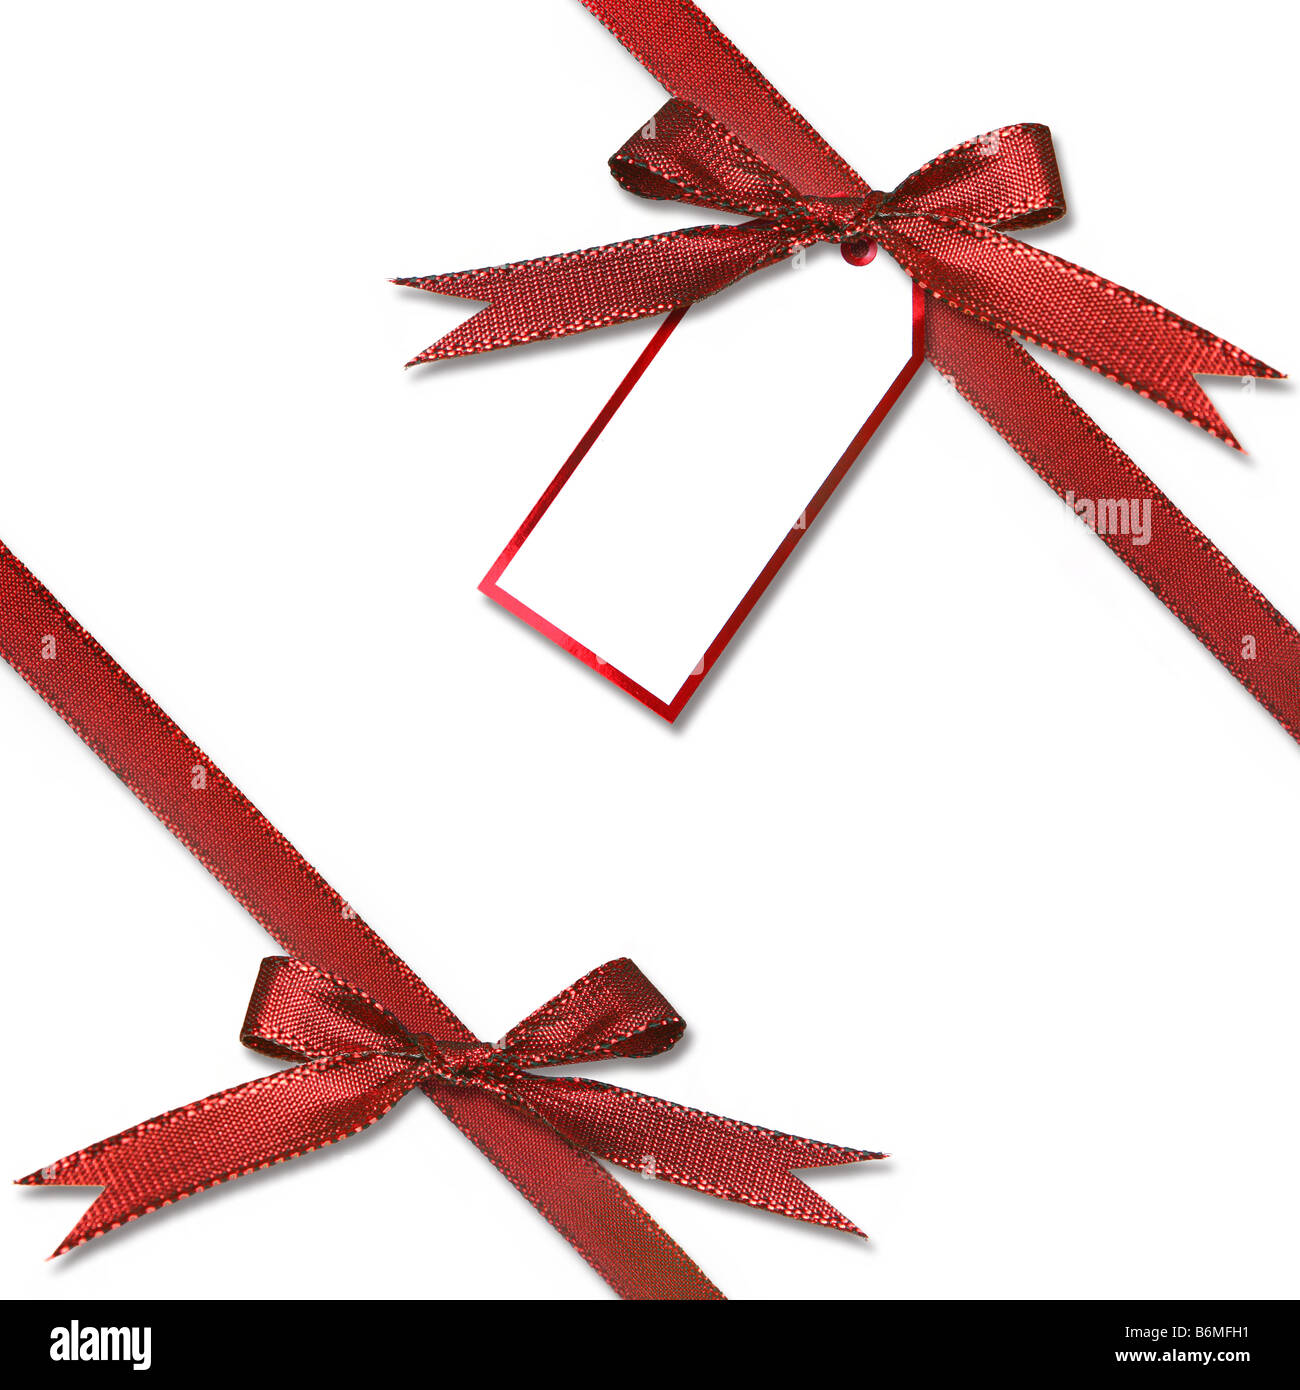 Tag cadeau de Noël suspendu à un présent avec arc rouge liée Banque D'Images